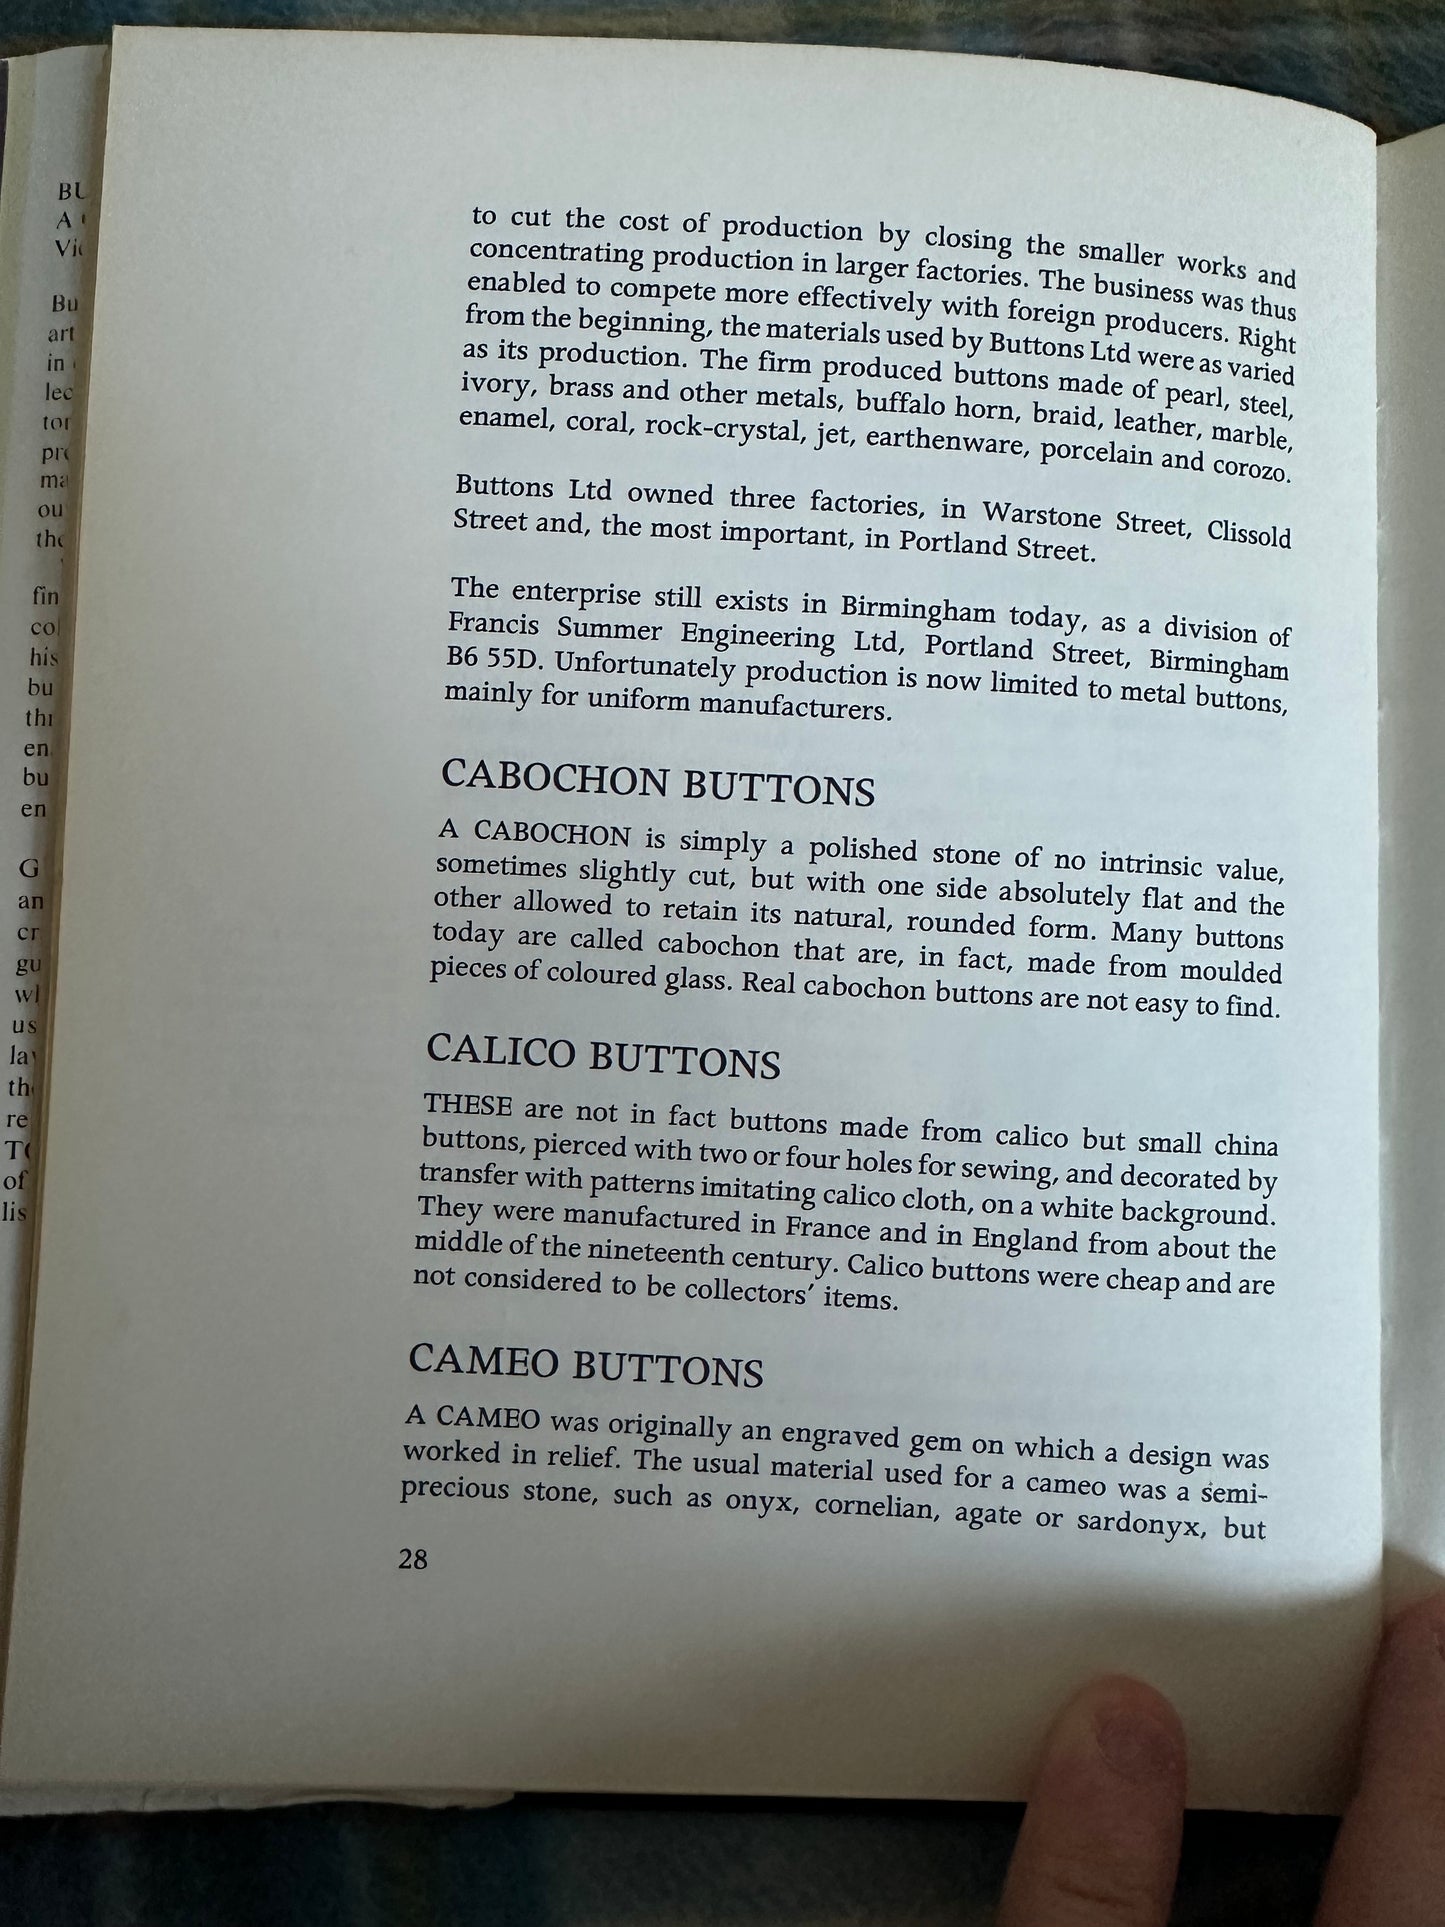 1977*1st* Buttons A Collectors Guide - Victor Houart(Souvenir Press)